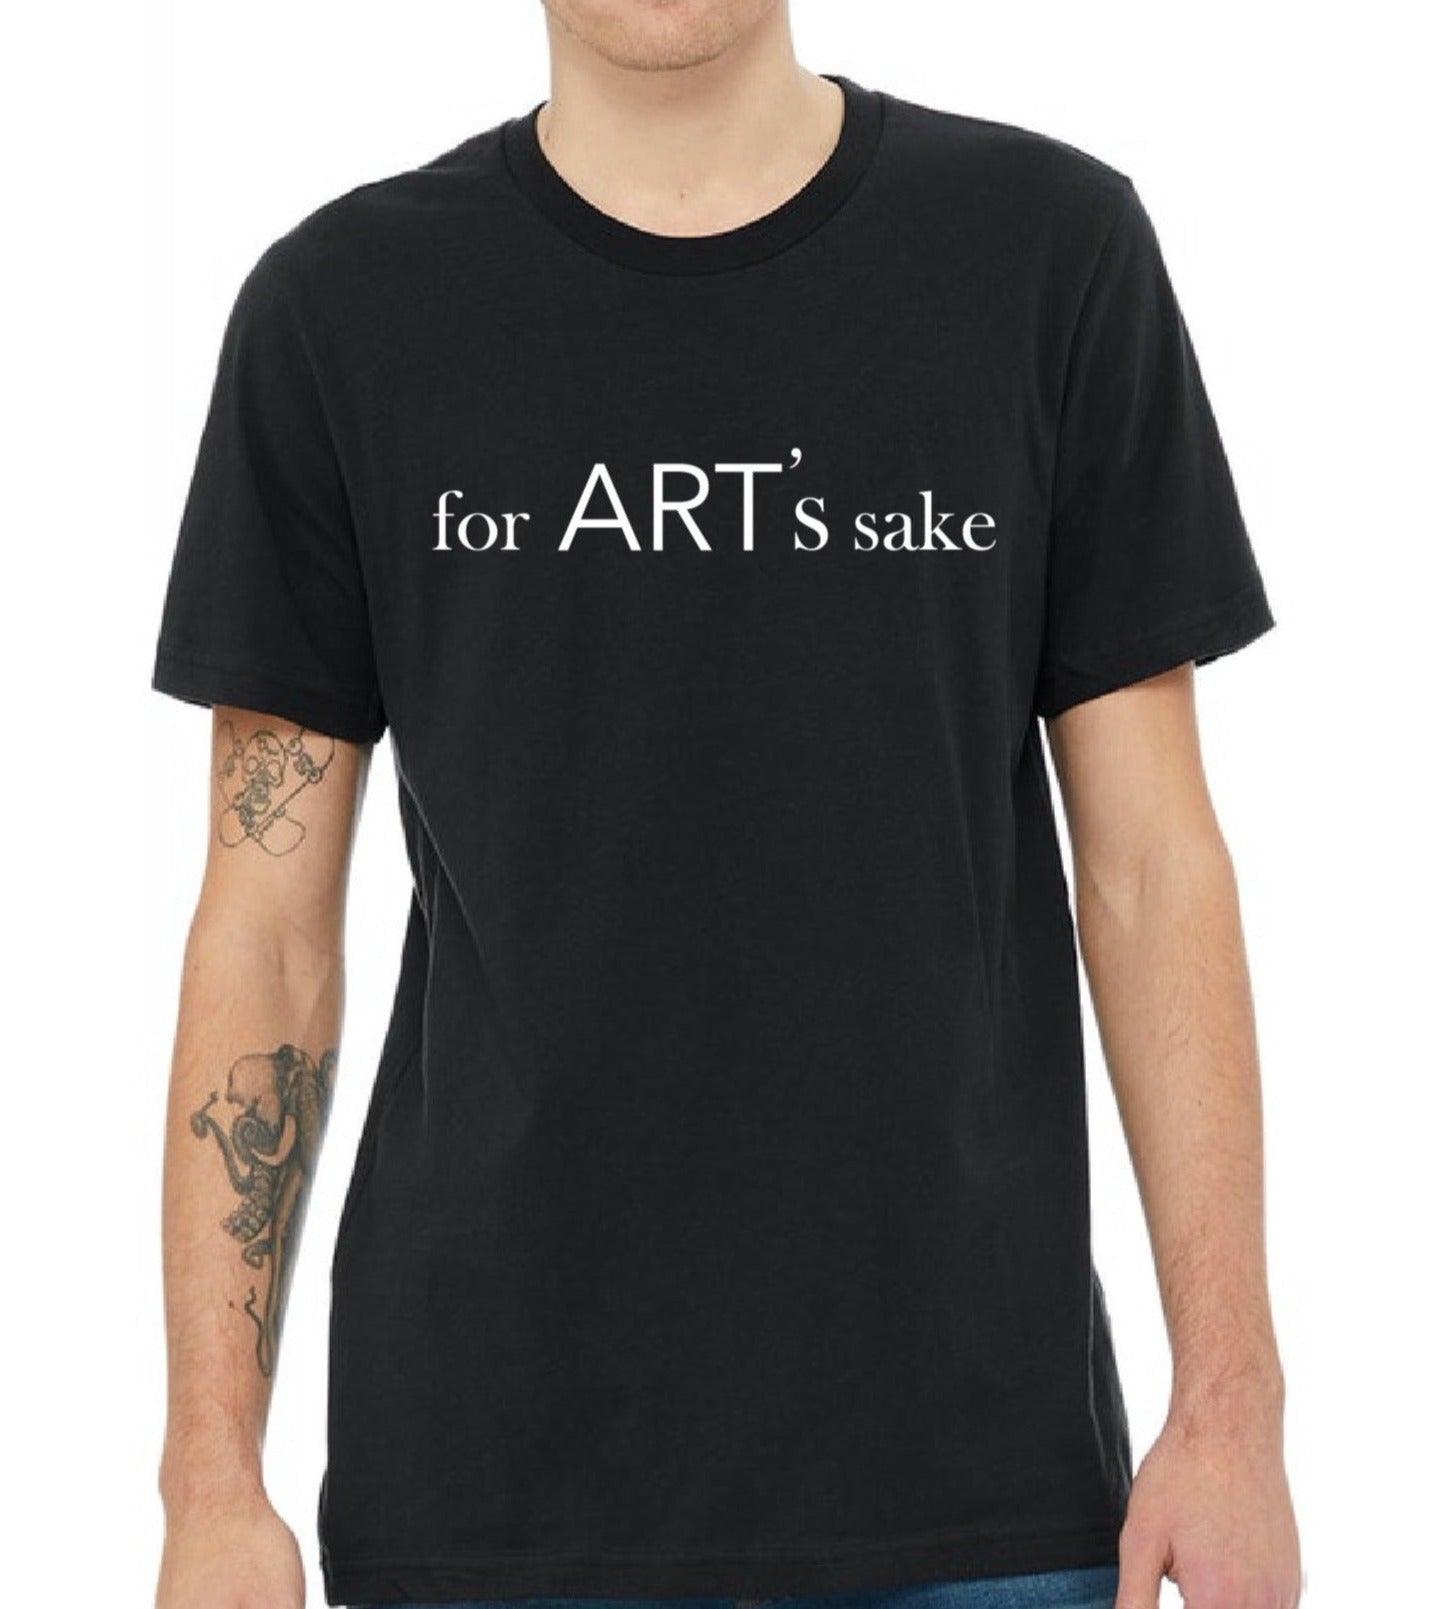 "for ART's sake" Shirt